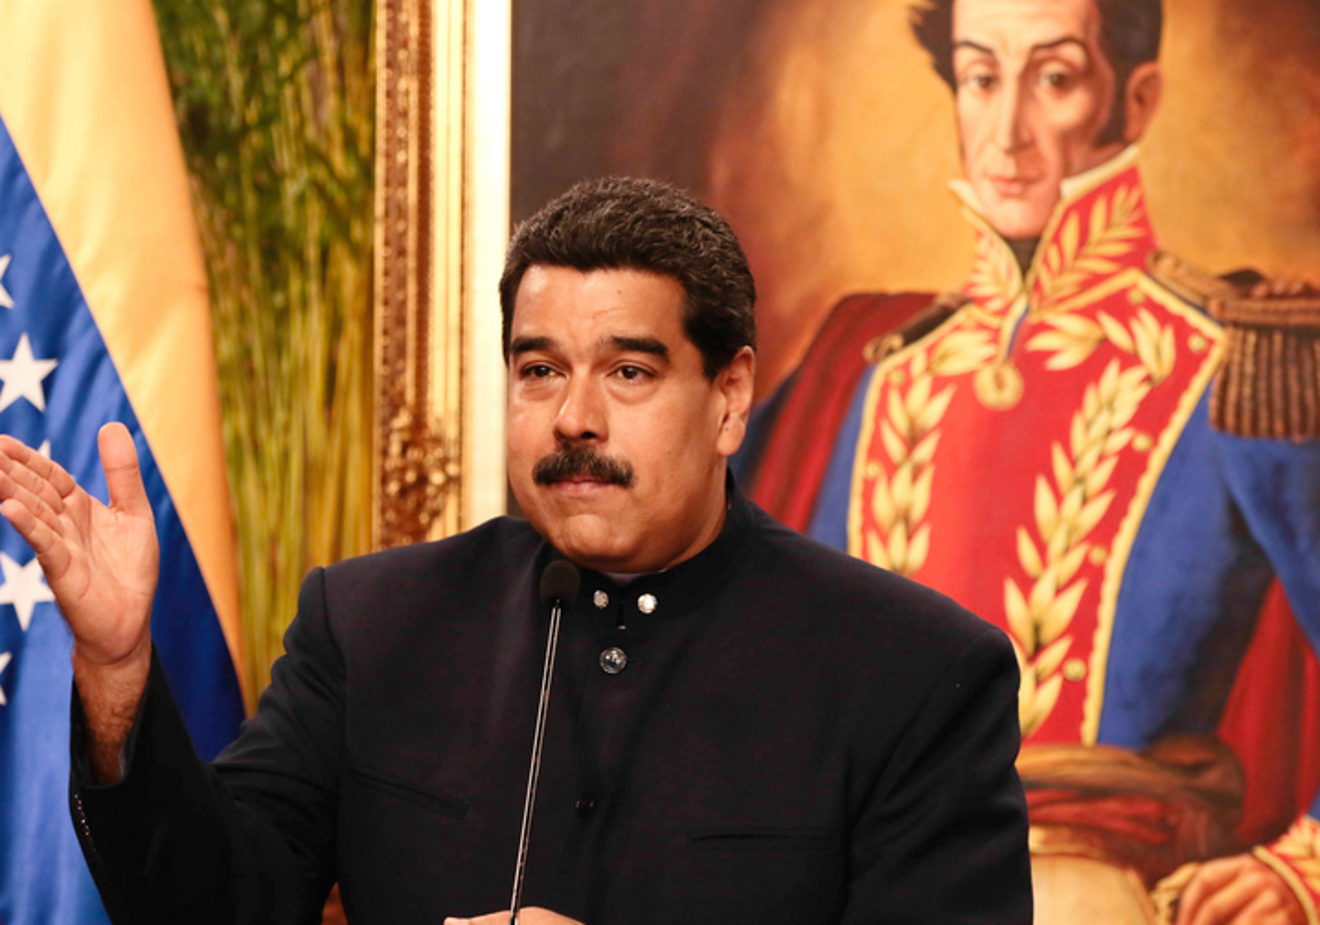 Nicolas-Maduro2